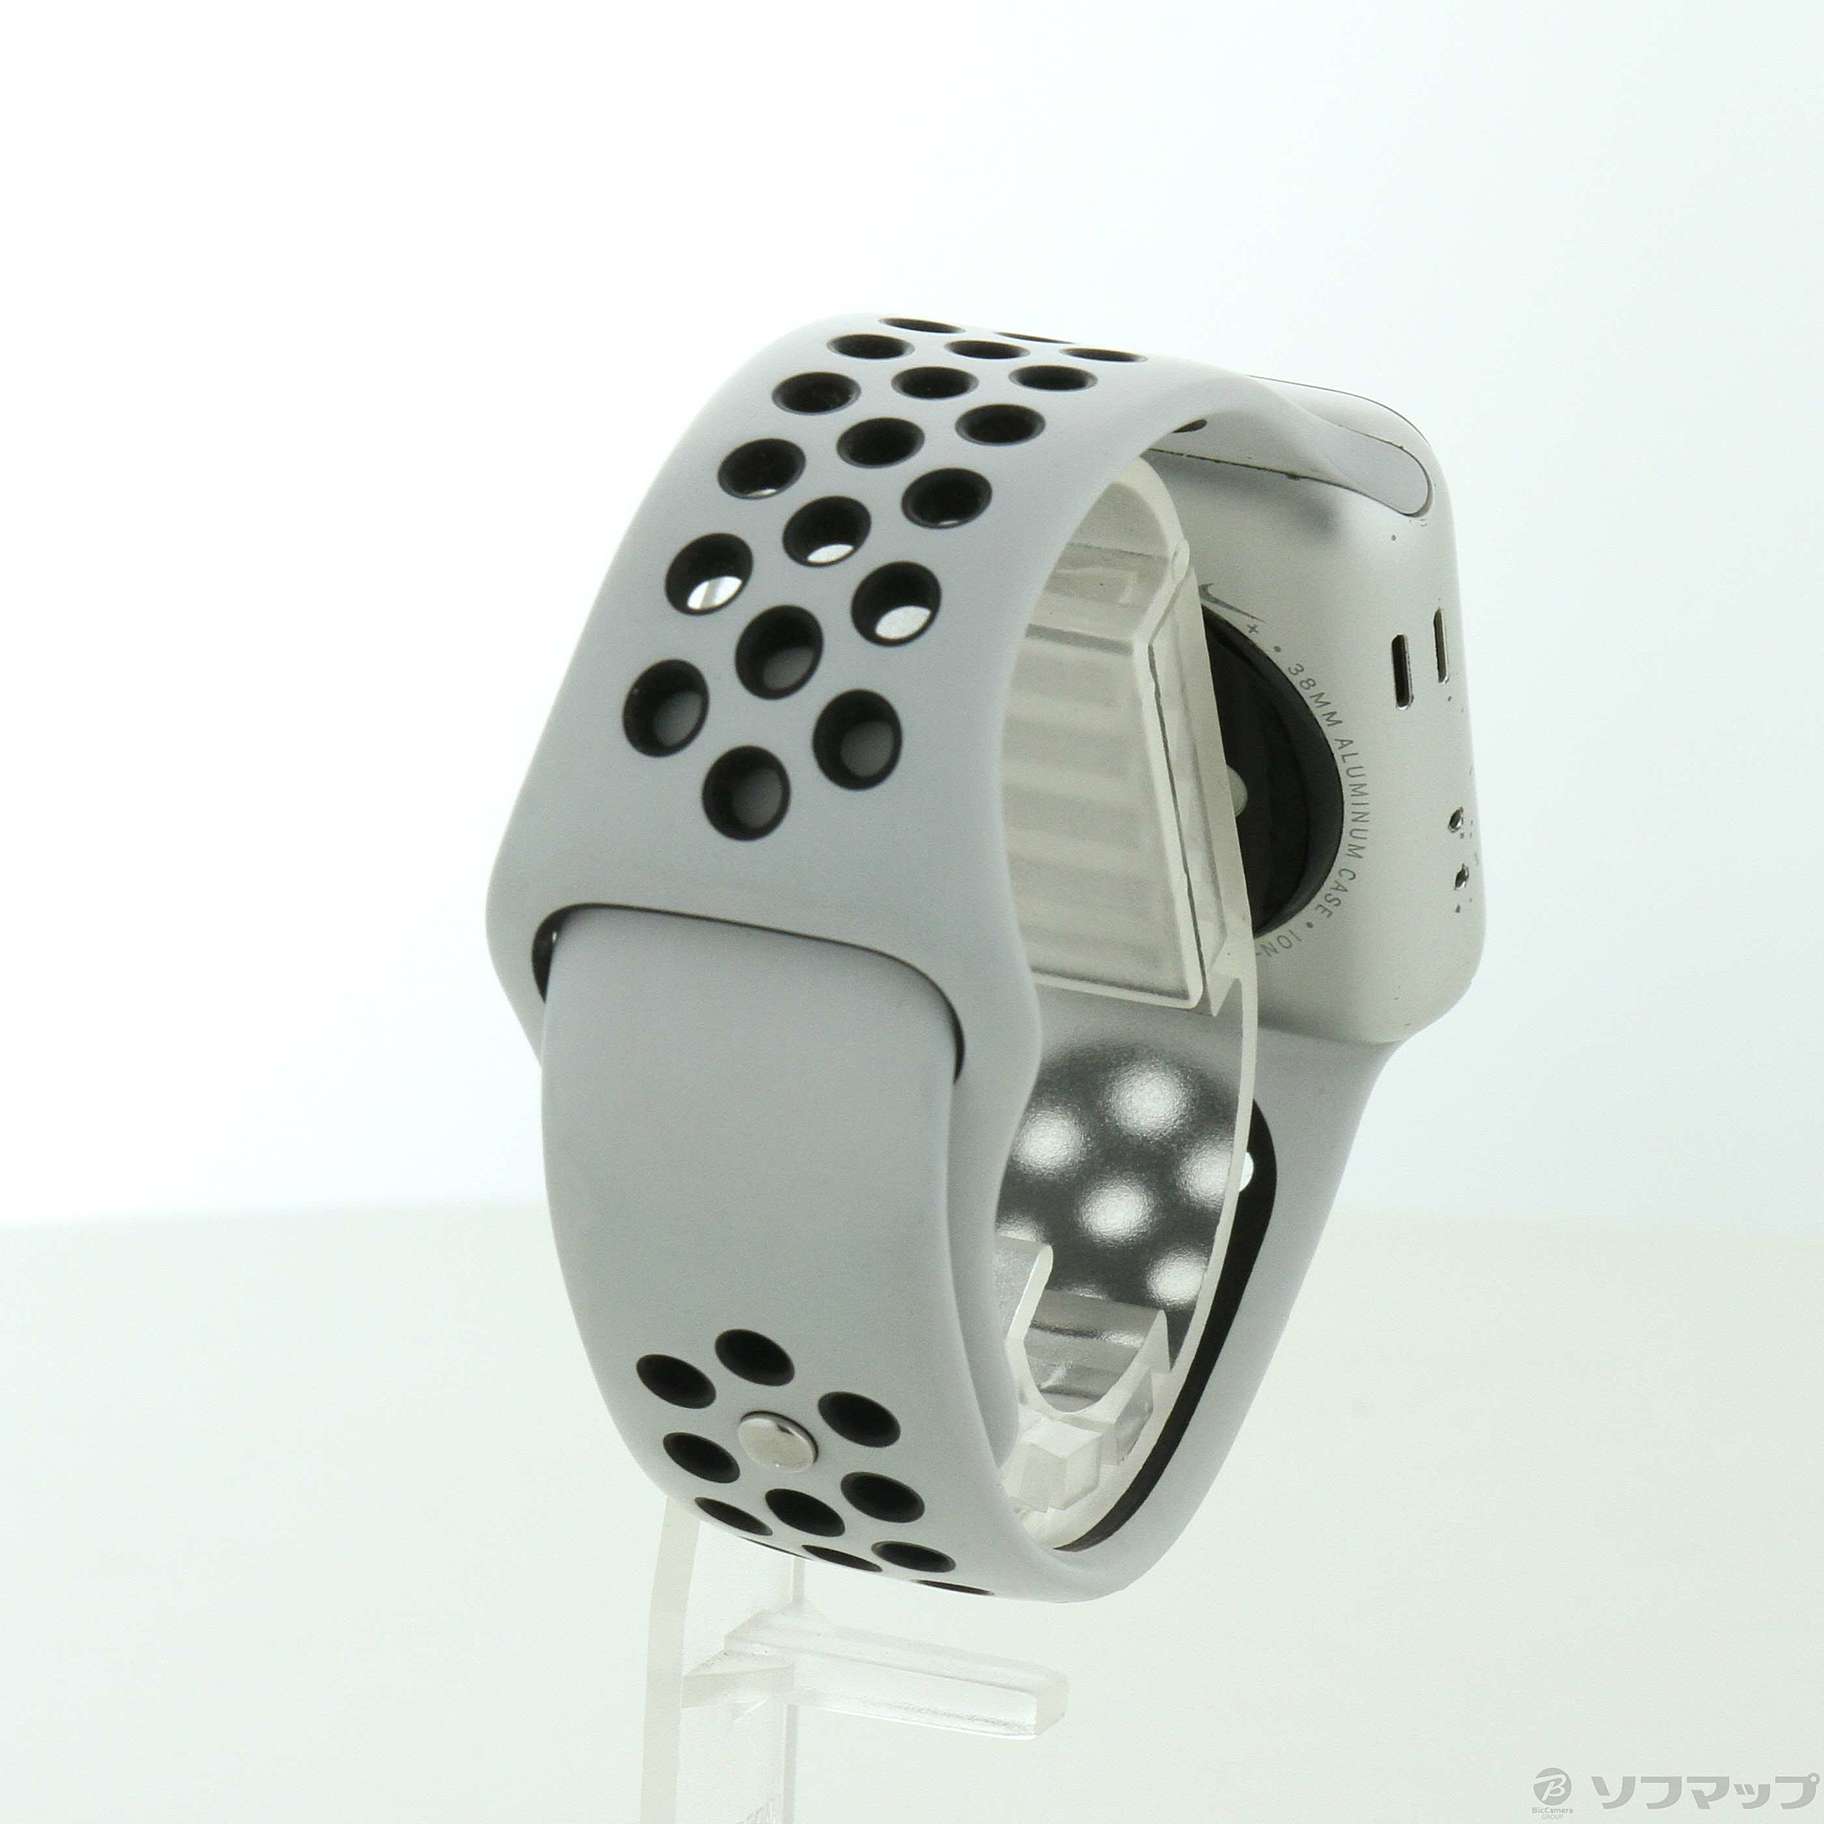 中古】Apple Watch Series 3 Nike+ GPS 38mm シルバーアルミニウム